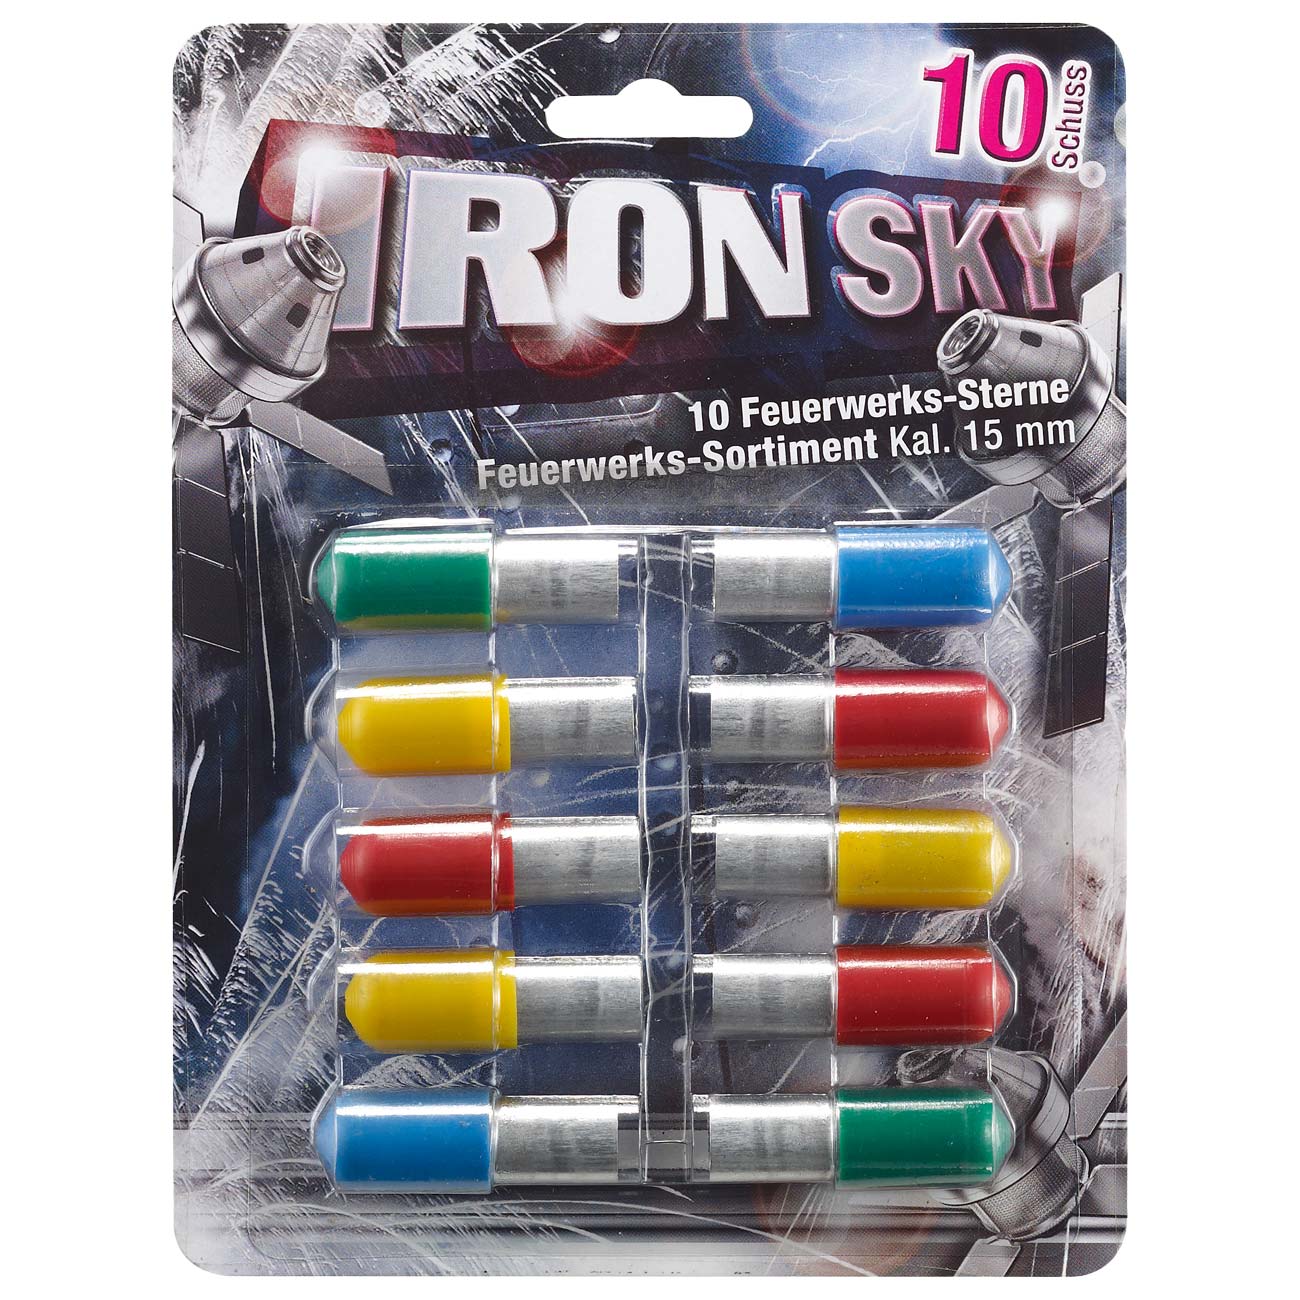 Iron Sky farbintensive Feuerwerk Signalsterne 10 Schuss bunt gemischt Bild 1